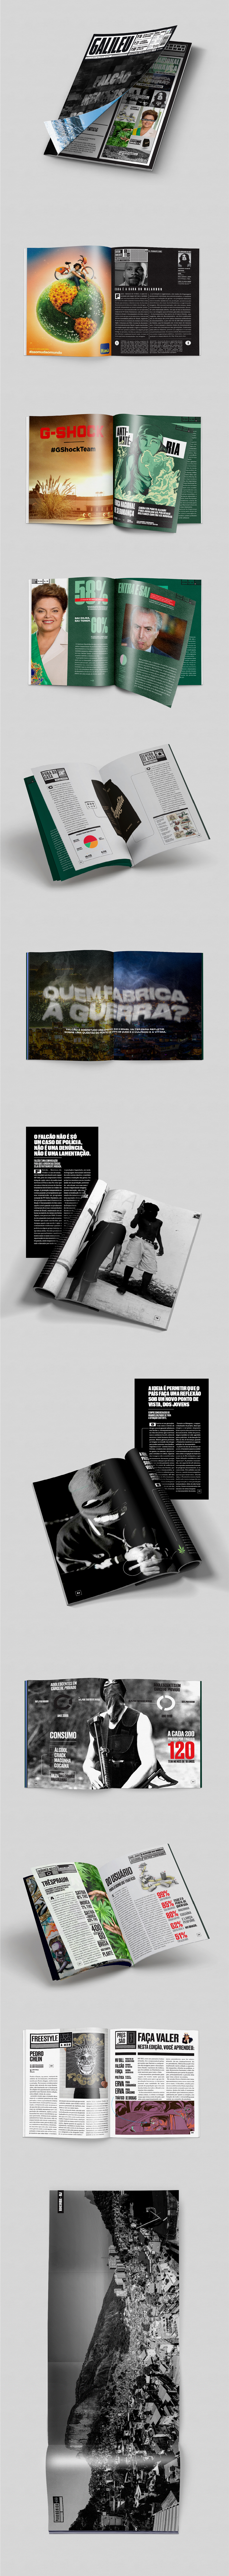 design magazine editorial galileu revista